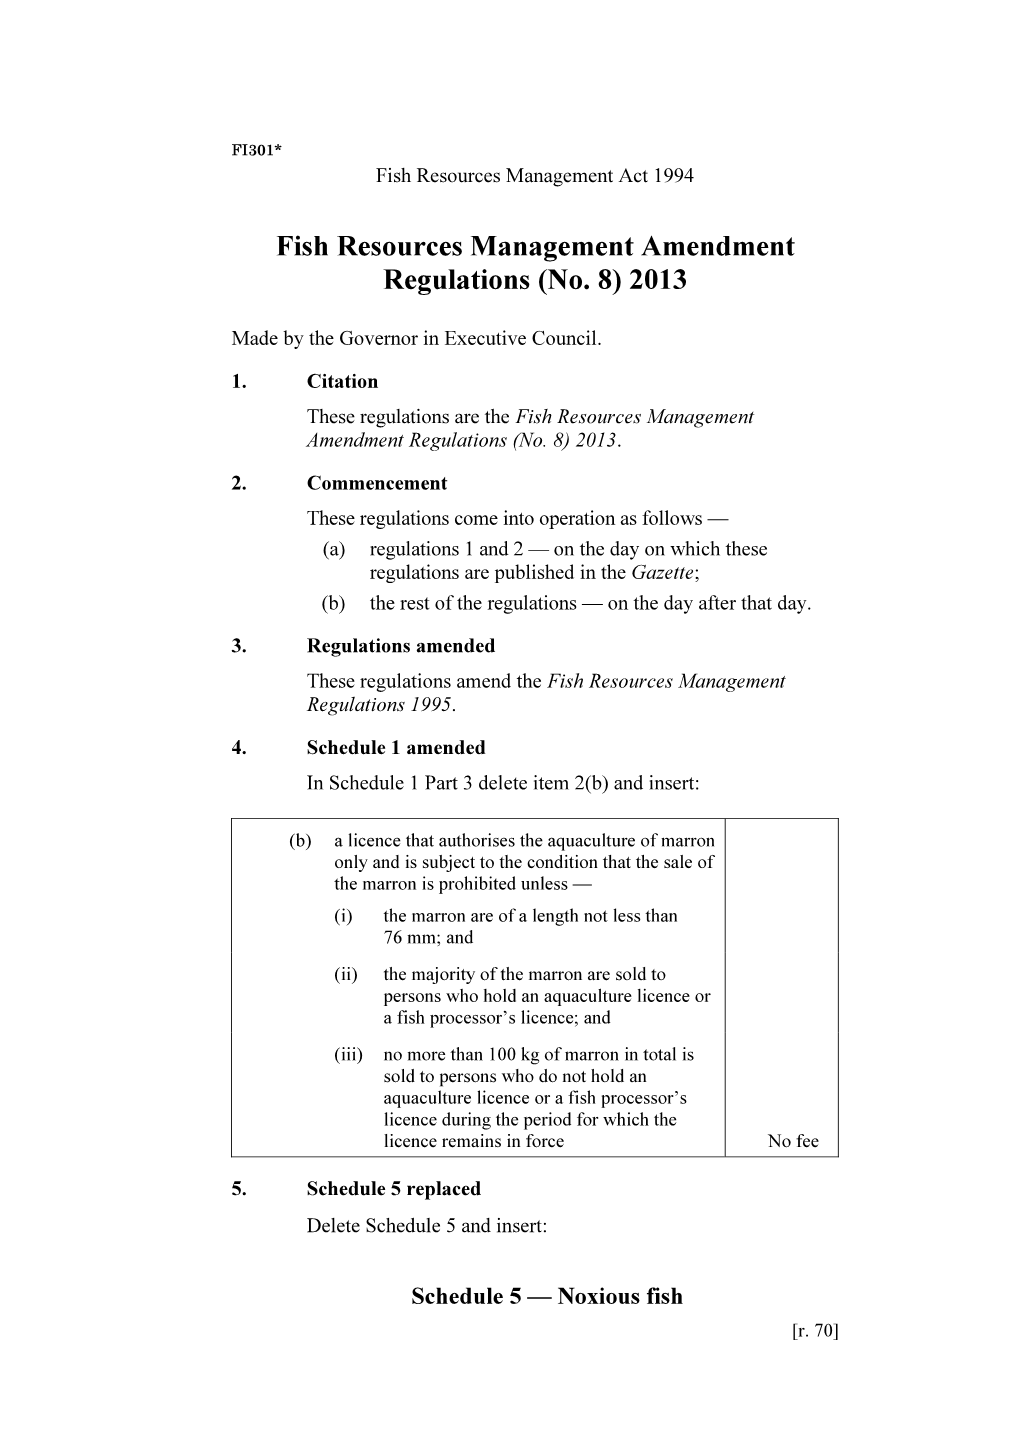 Fish Resources Management Amendment Regulations (No. 8) 2013